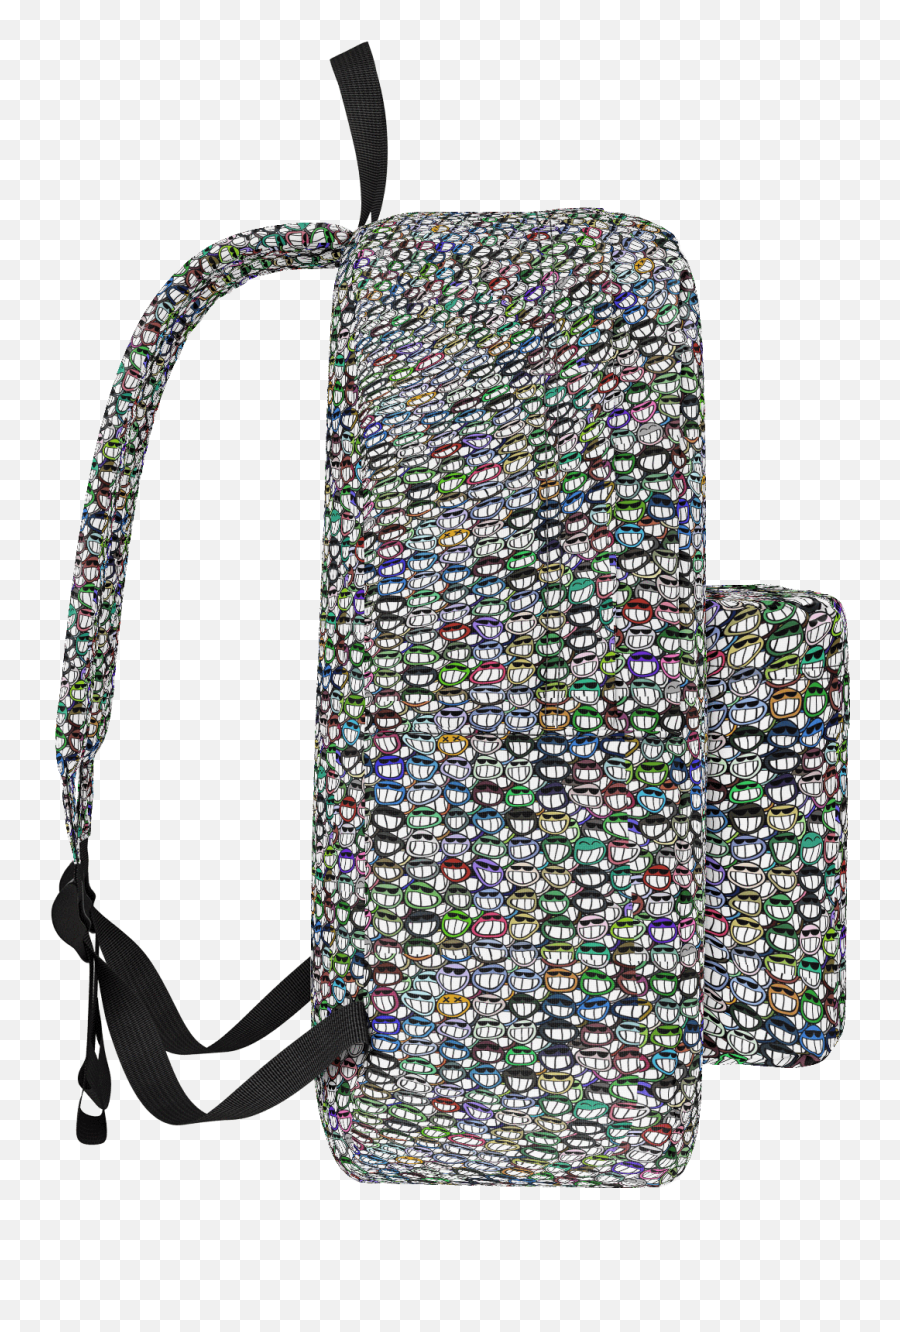 Aphmau Backpack And Lunchbox Png Image - Aphmau Wolf Pup Backpack Emoji,Emoji Backpack With Lunchbox